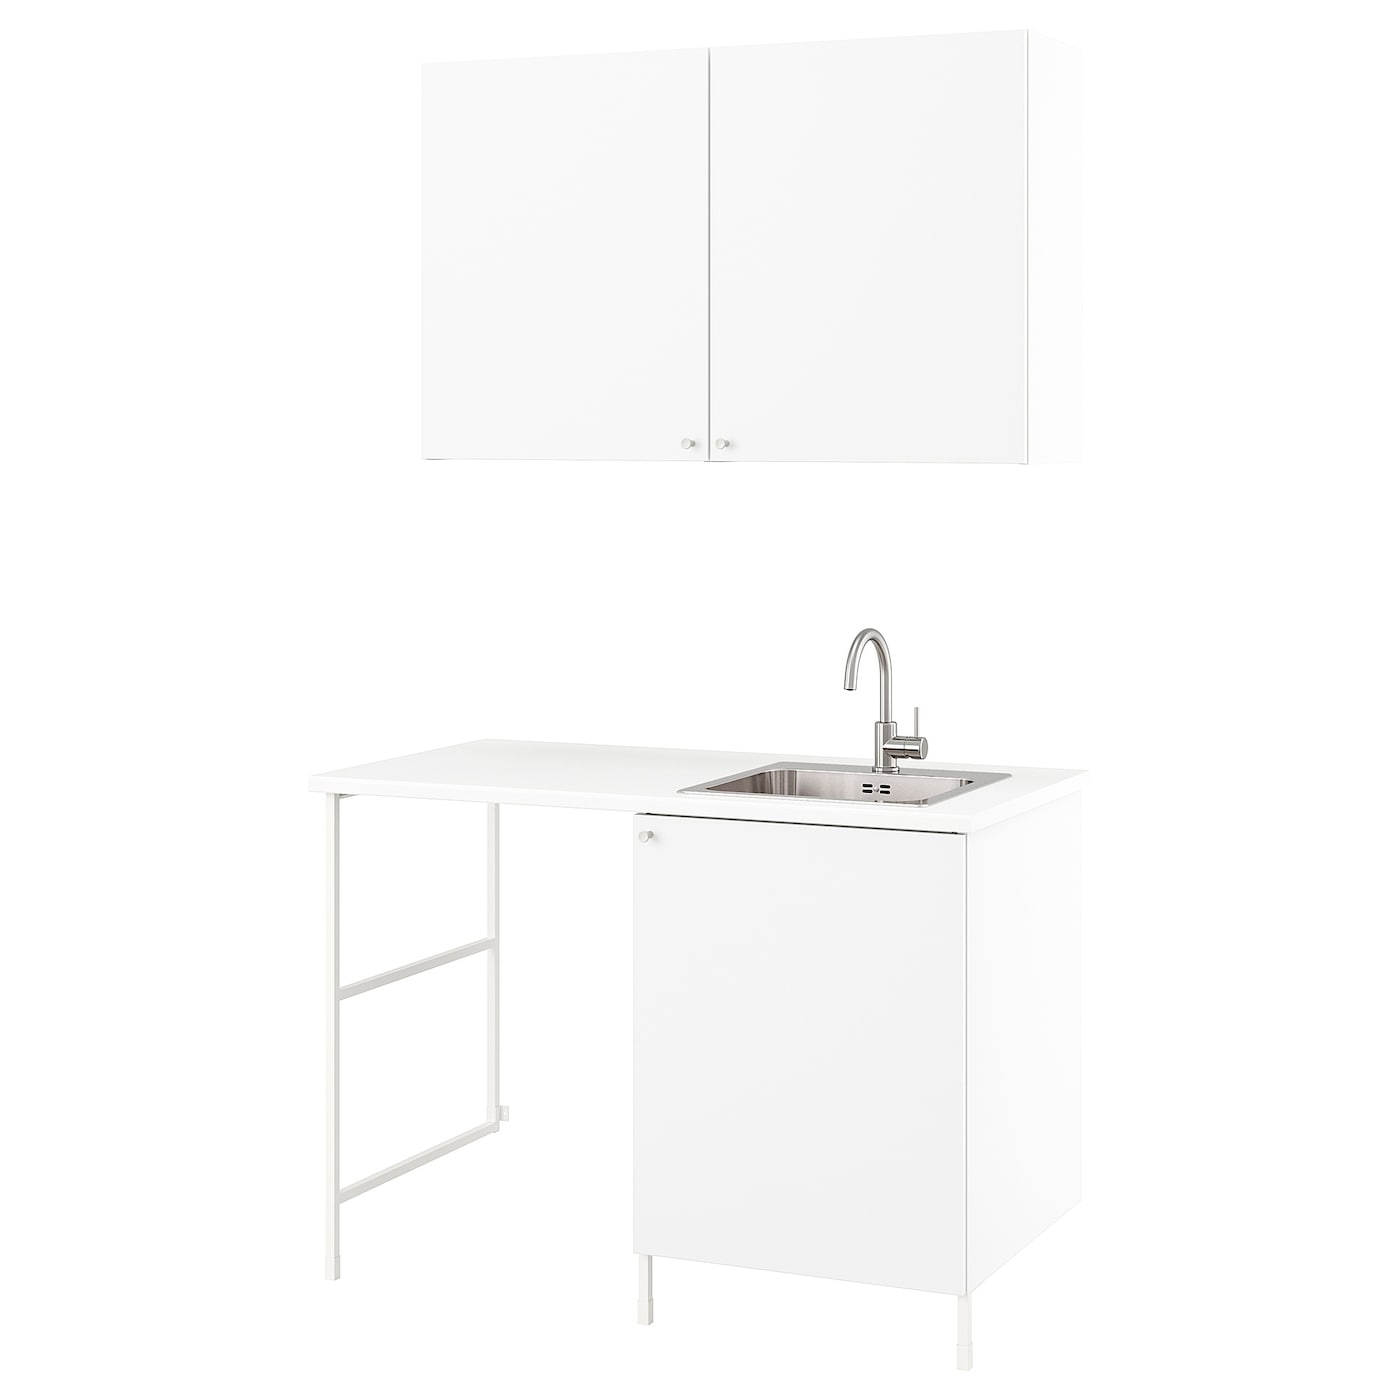 Комбинация для ванной - IKEA ENHET, 139х63.5х87.5 см, белый, ЭНХЕТ ИКЕА